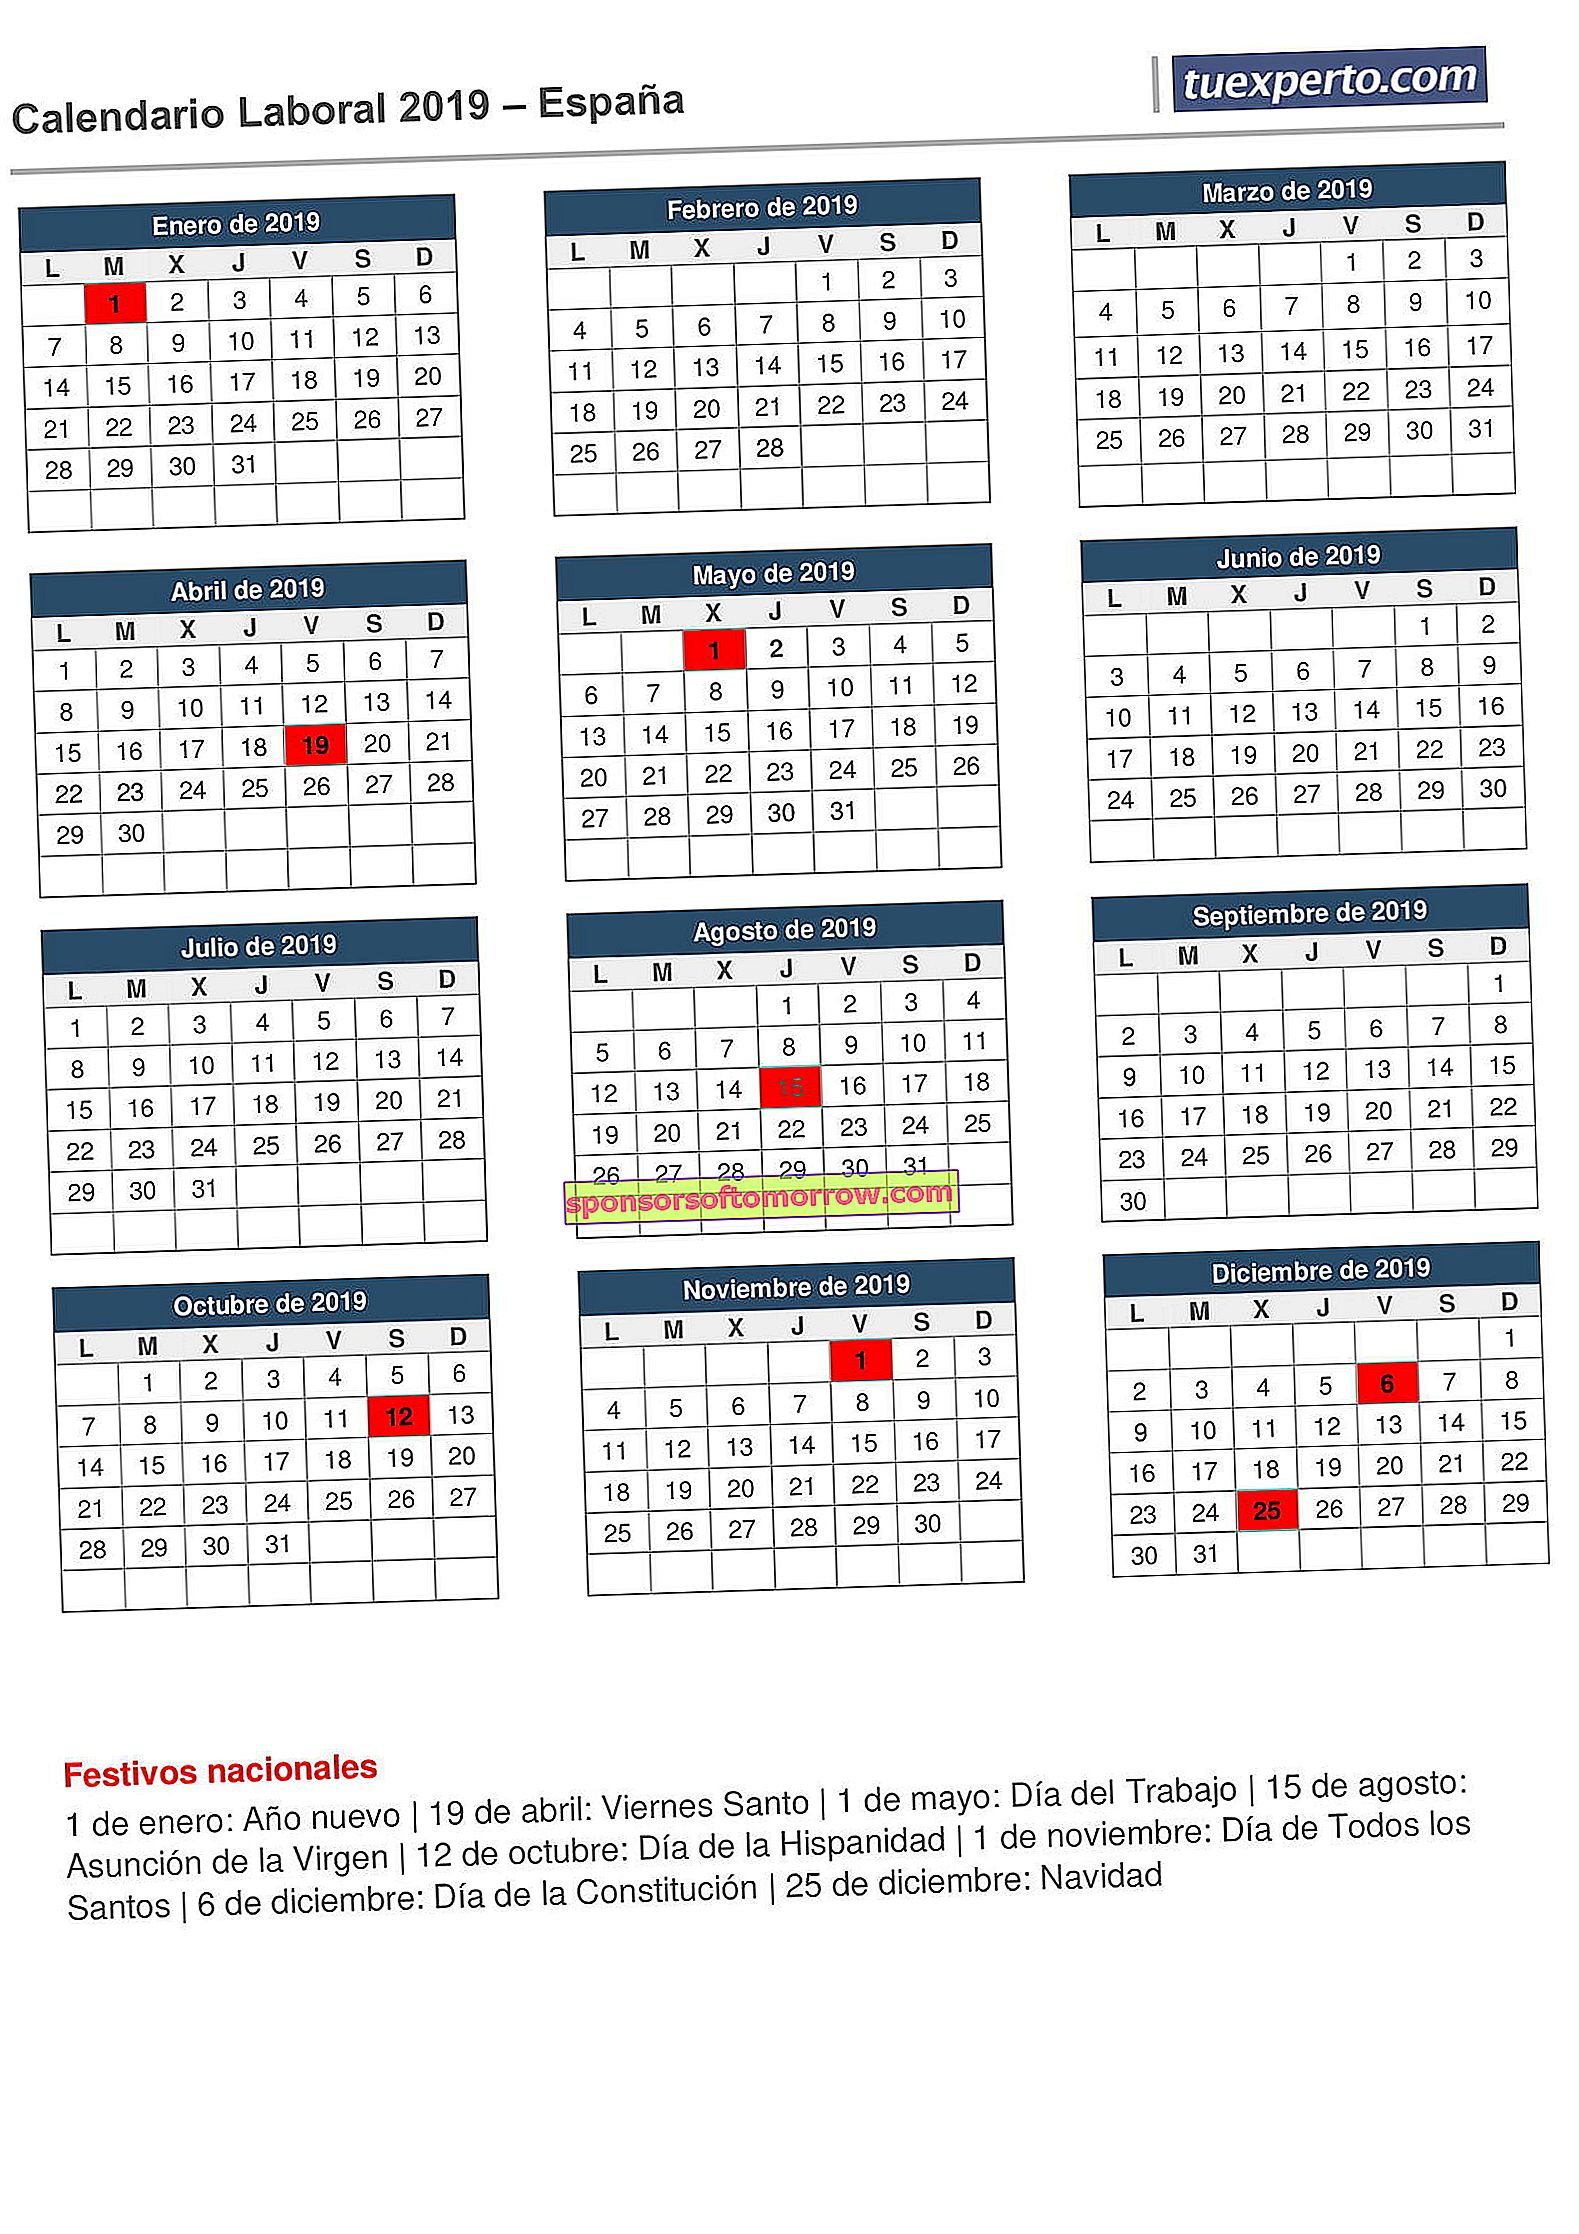 Kalender kerja 2019 untuk diunduh 